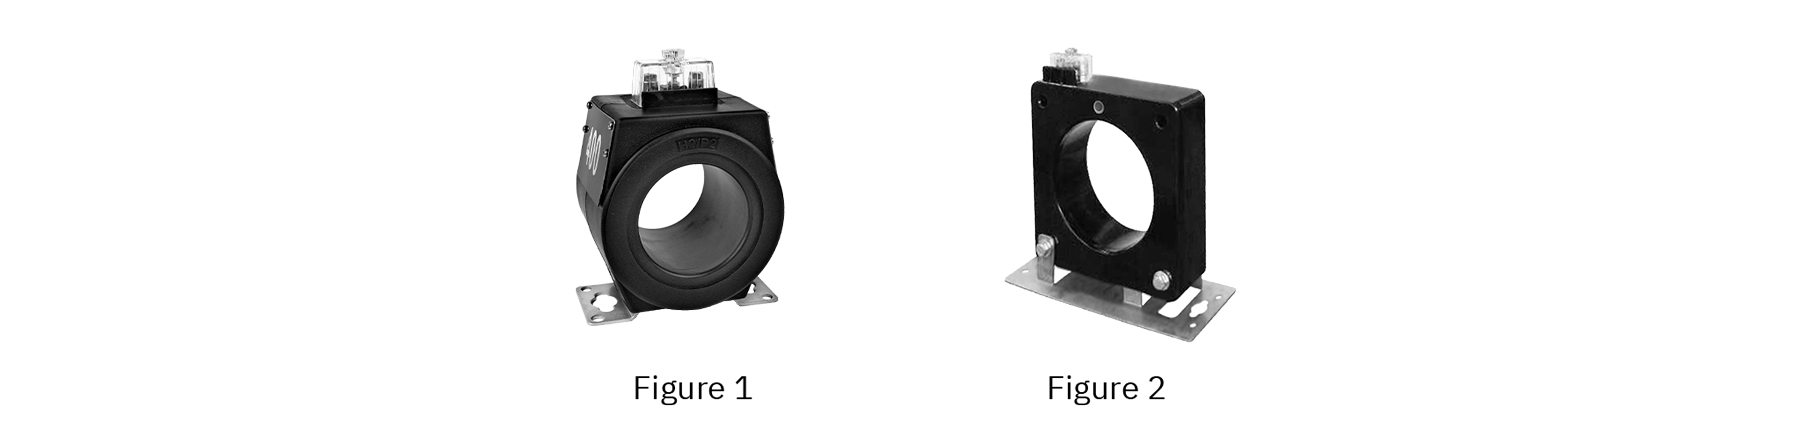 Transformador de corriente de baja tensión serie ROS-A - diseños de productos